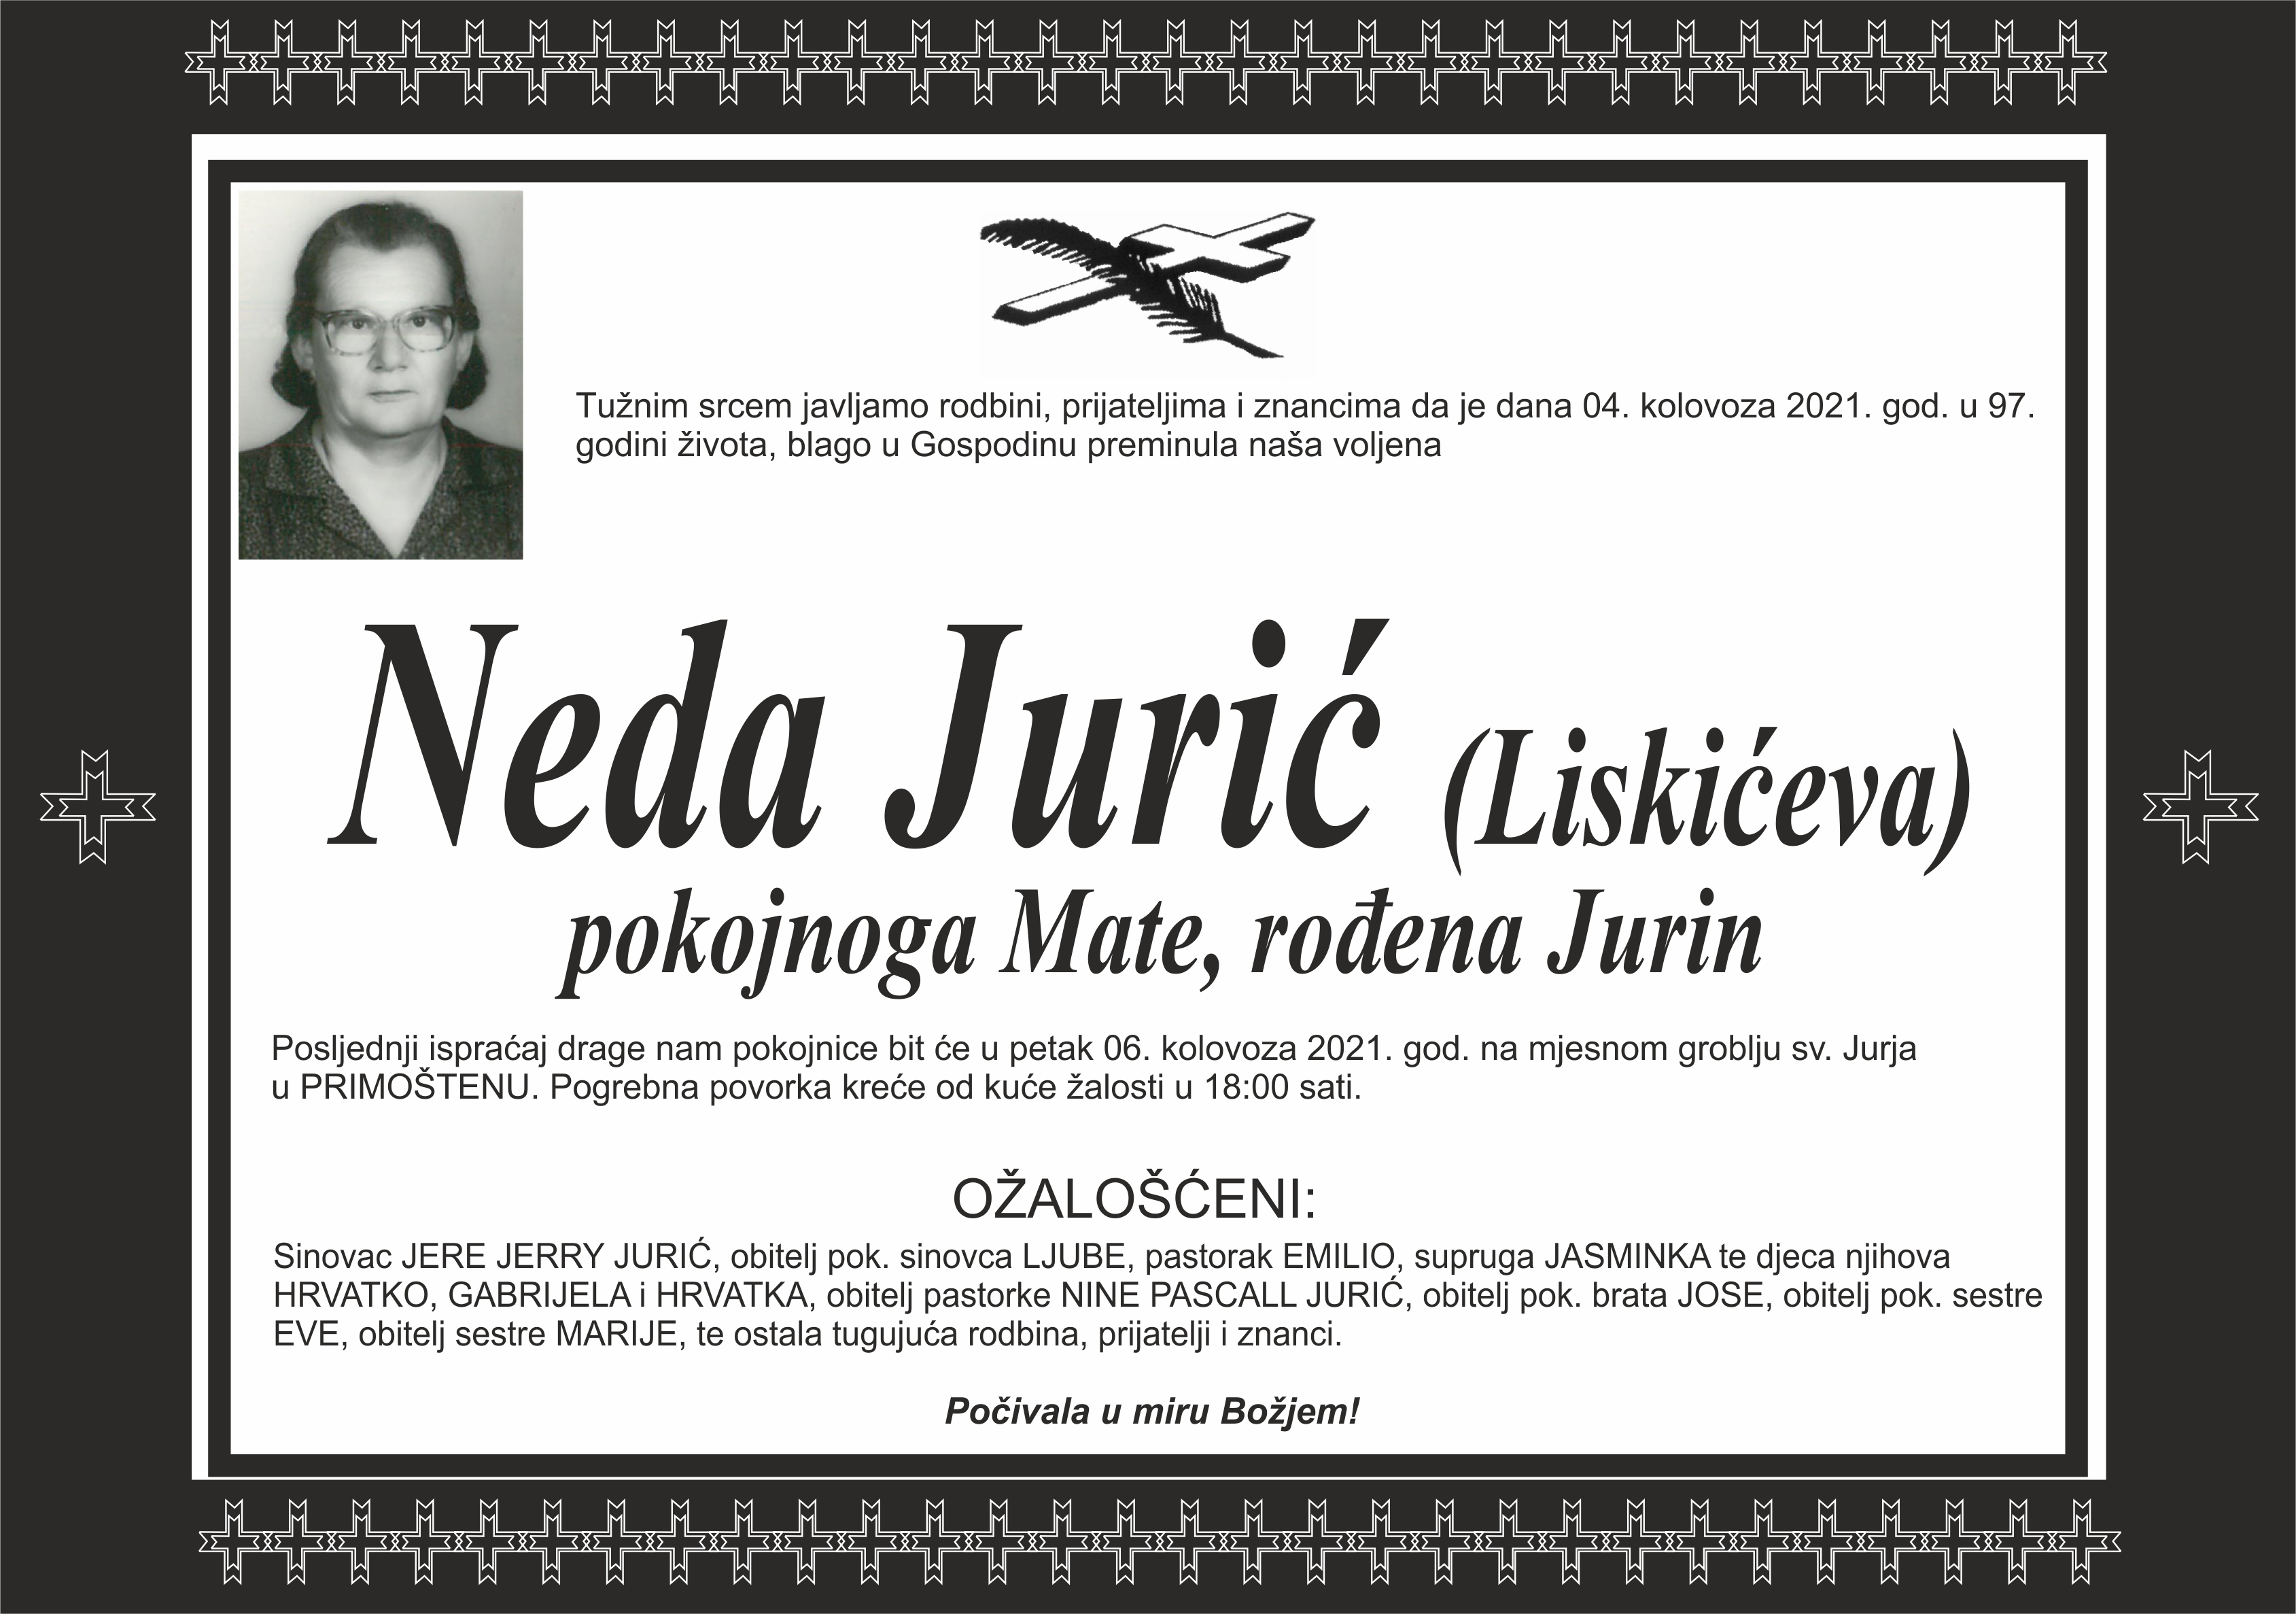 Umrla Neda Jurić - Liskićeva 